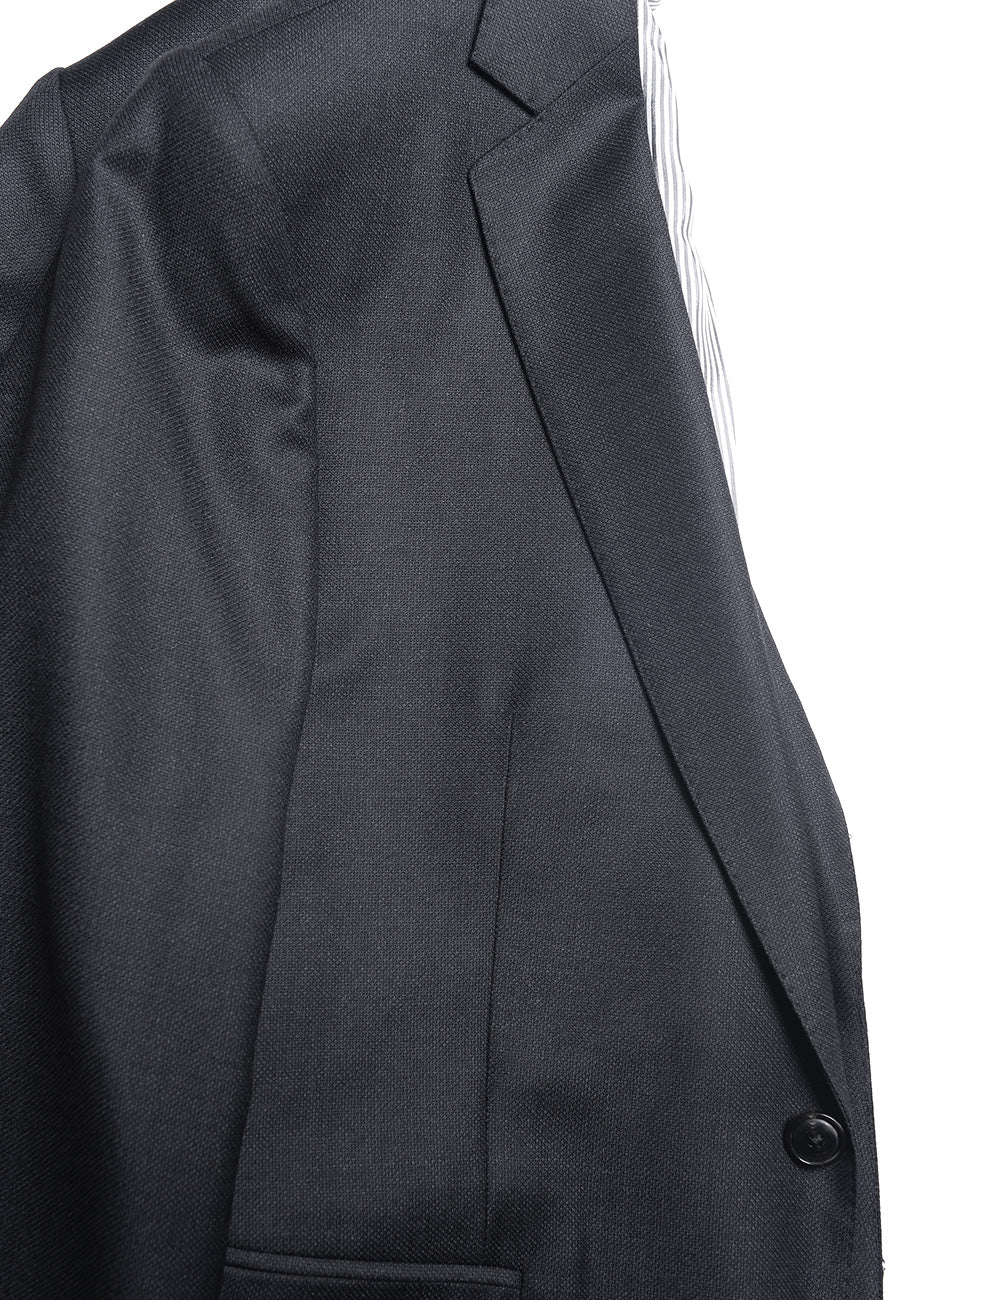 Detail of BKT50 Tailored Jacket in Birdseye Weave - Black showing lapel